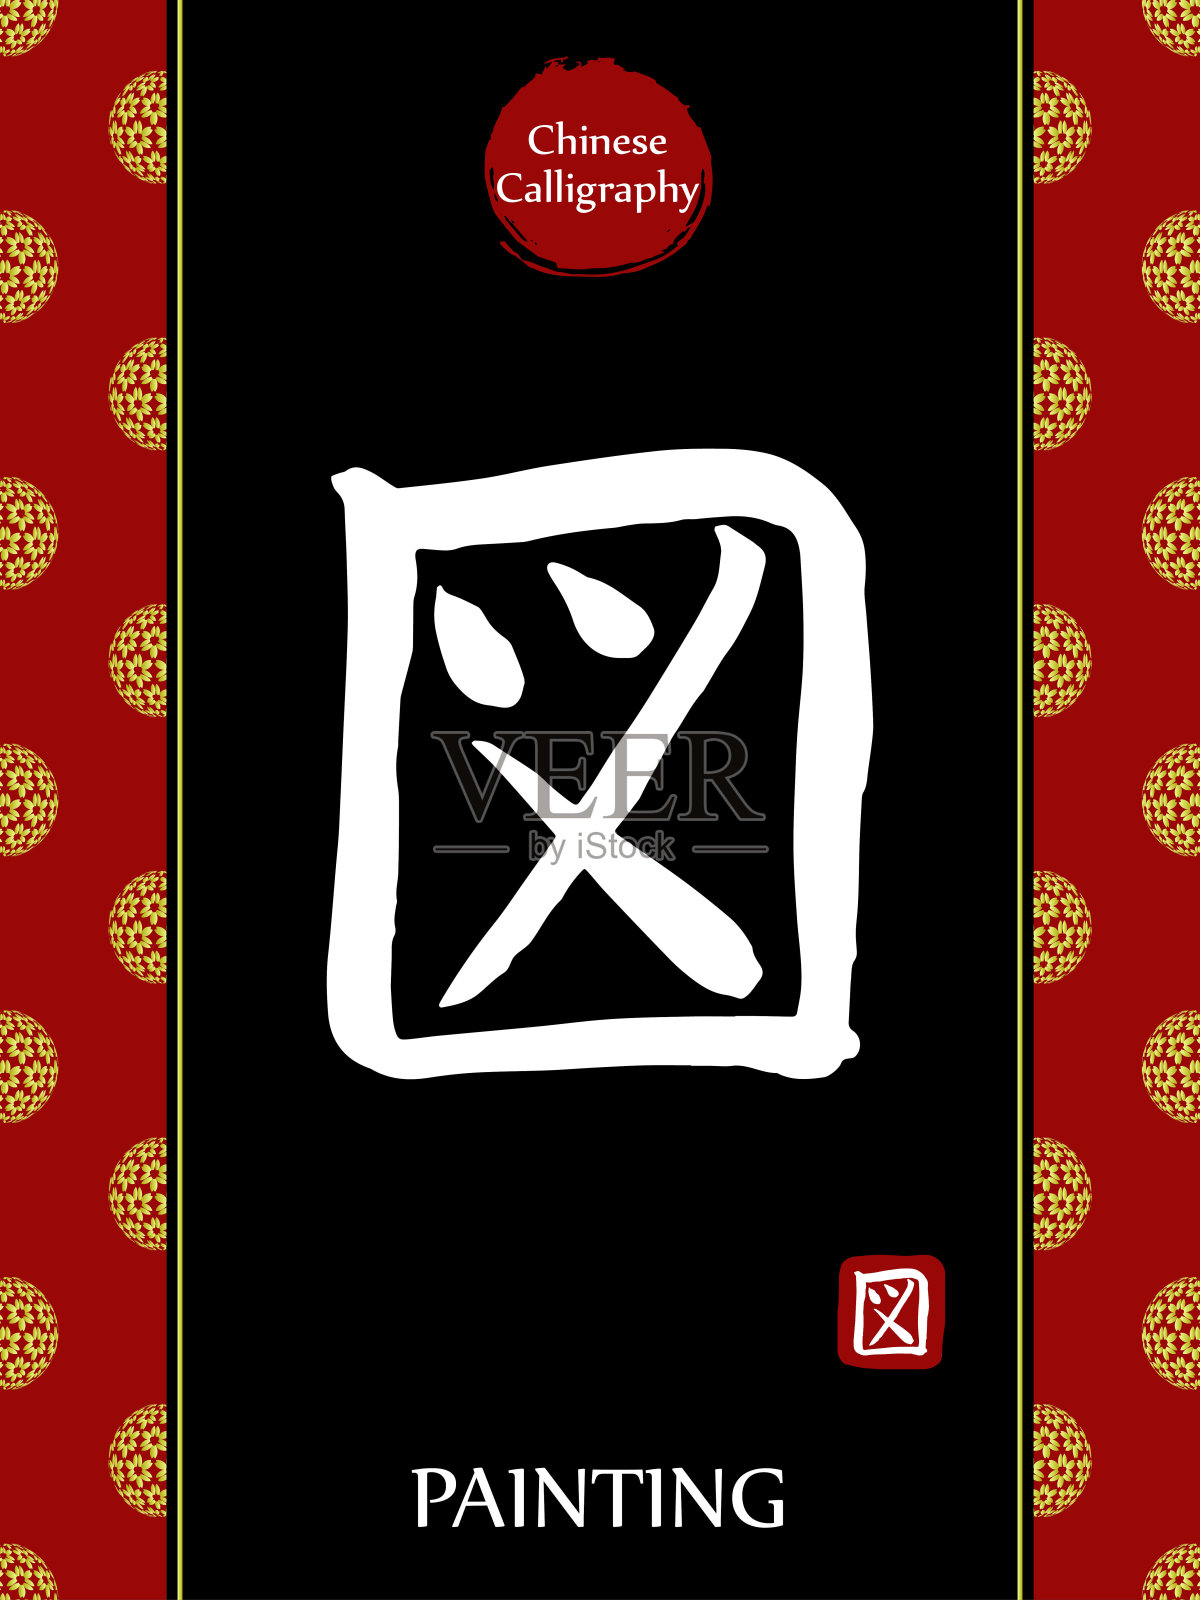 中国书法象形文字翻译:绘画。亚洲金花球农历新年图案。向量中国符号在黑色背景。手绘图画文字。毛笔书法插画图片素材